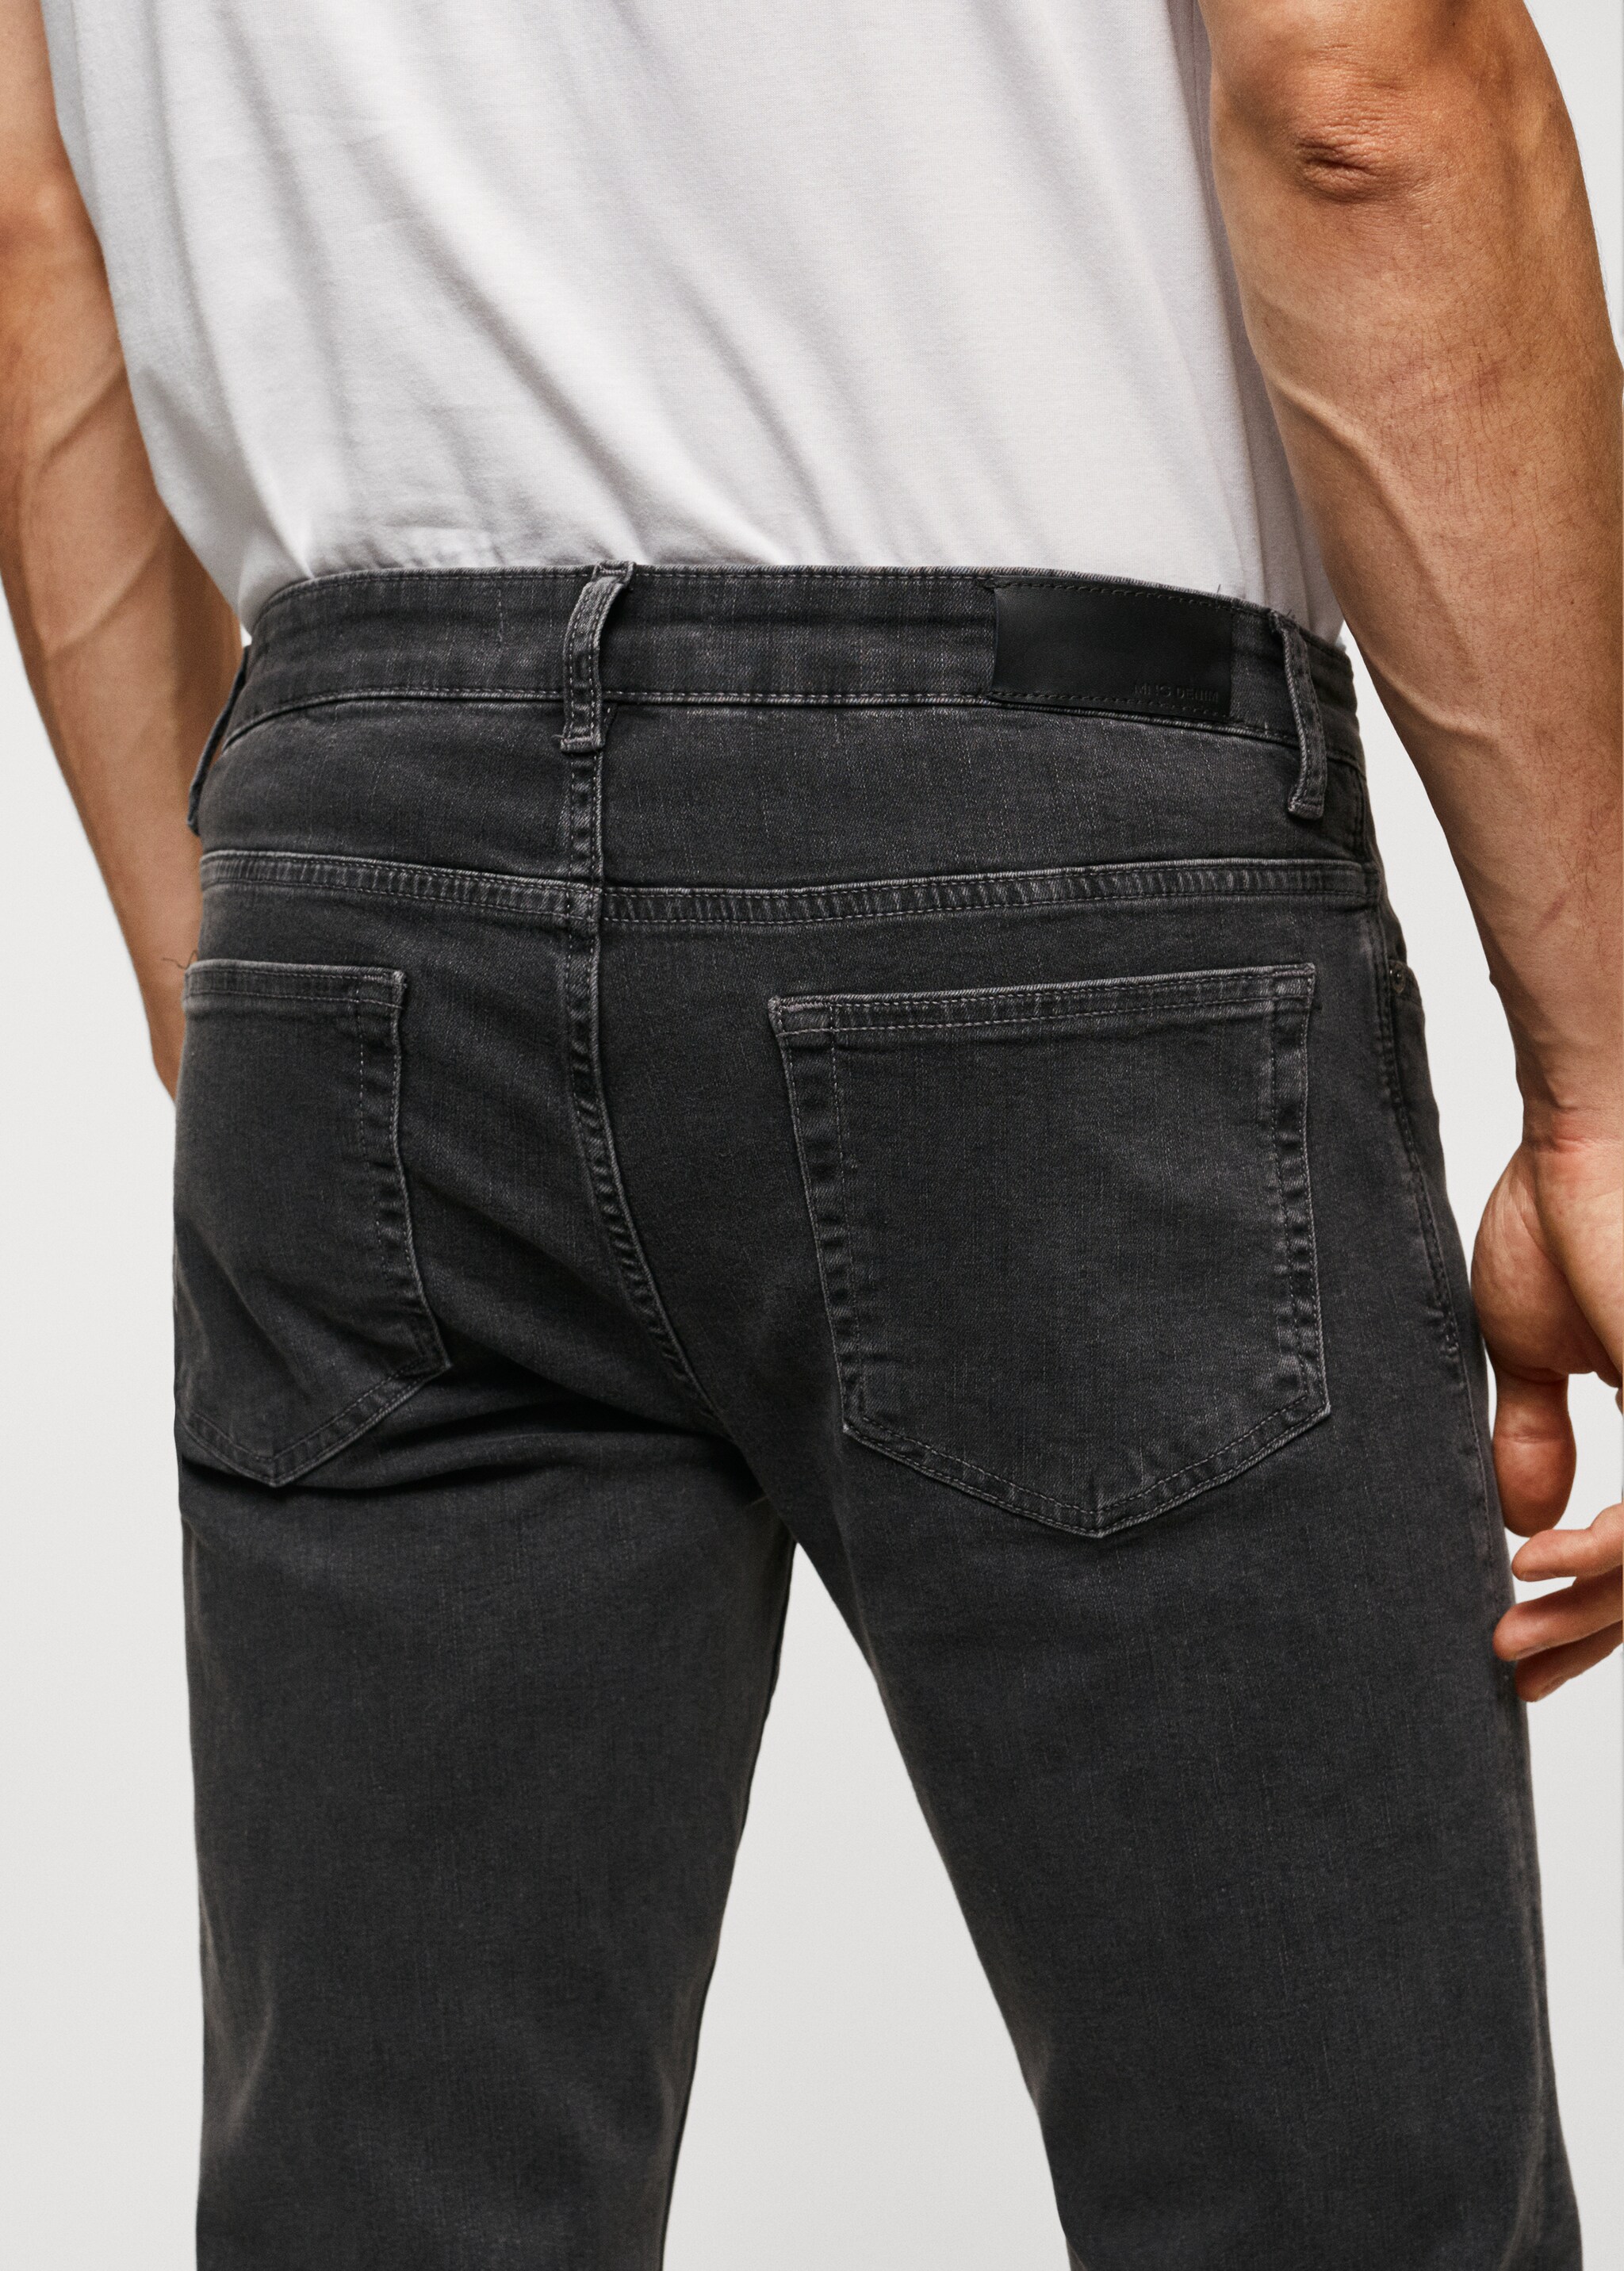 Jeans Patrick slim fit Ultra Soft Touch - Pormenor do artigo 6